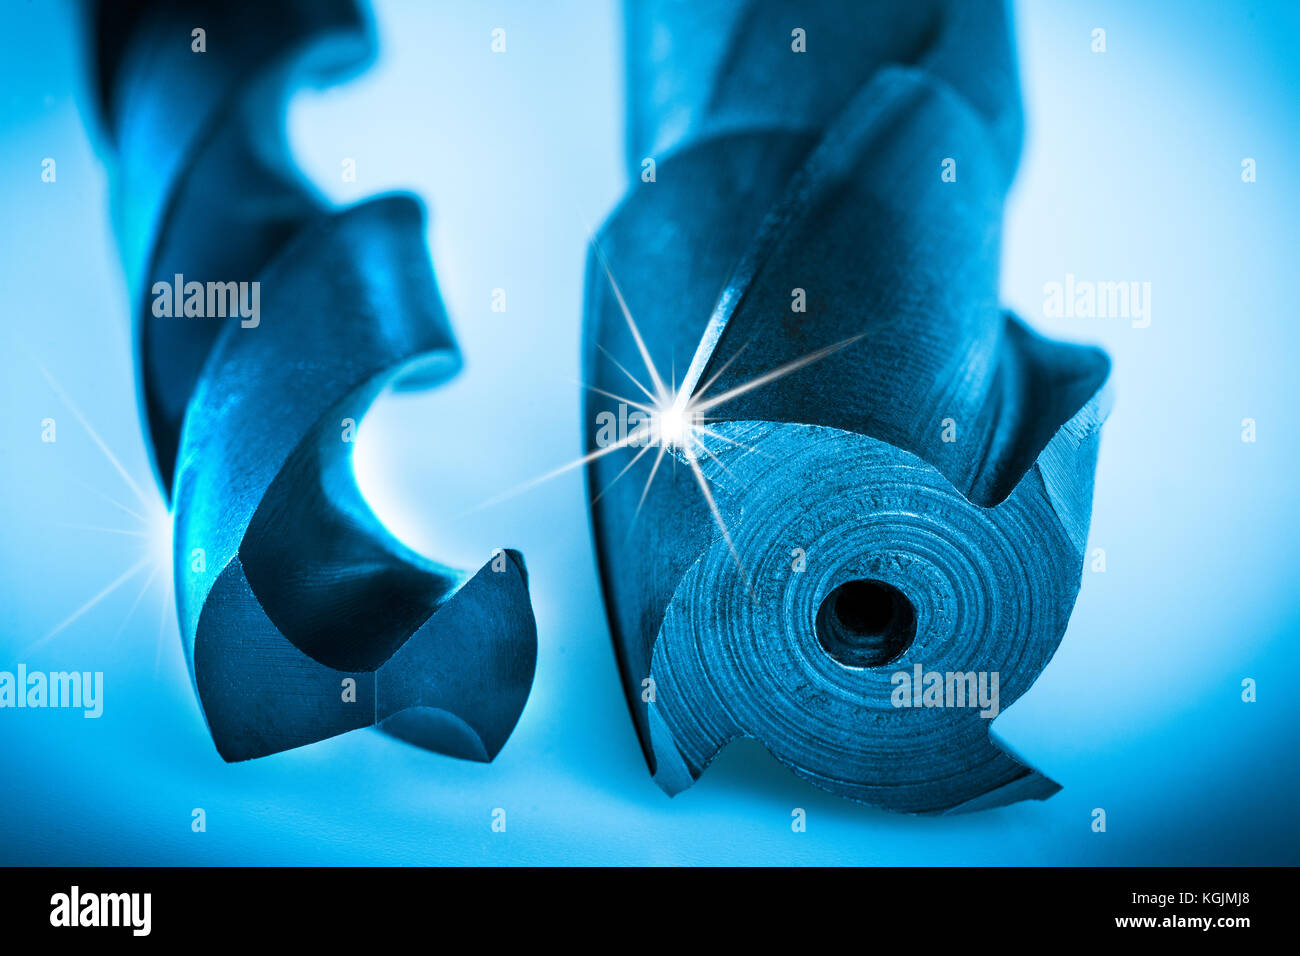 Dettaglio di utensili di taglio per realizzare geometricamente fori precisi. meravigliosi strumenti di perforazione con scanalatura a spirale in colore blu con raggi sul bordo di taglio Foto Stock